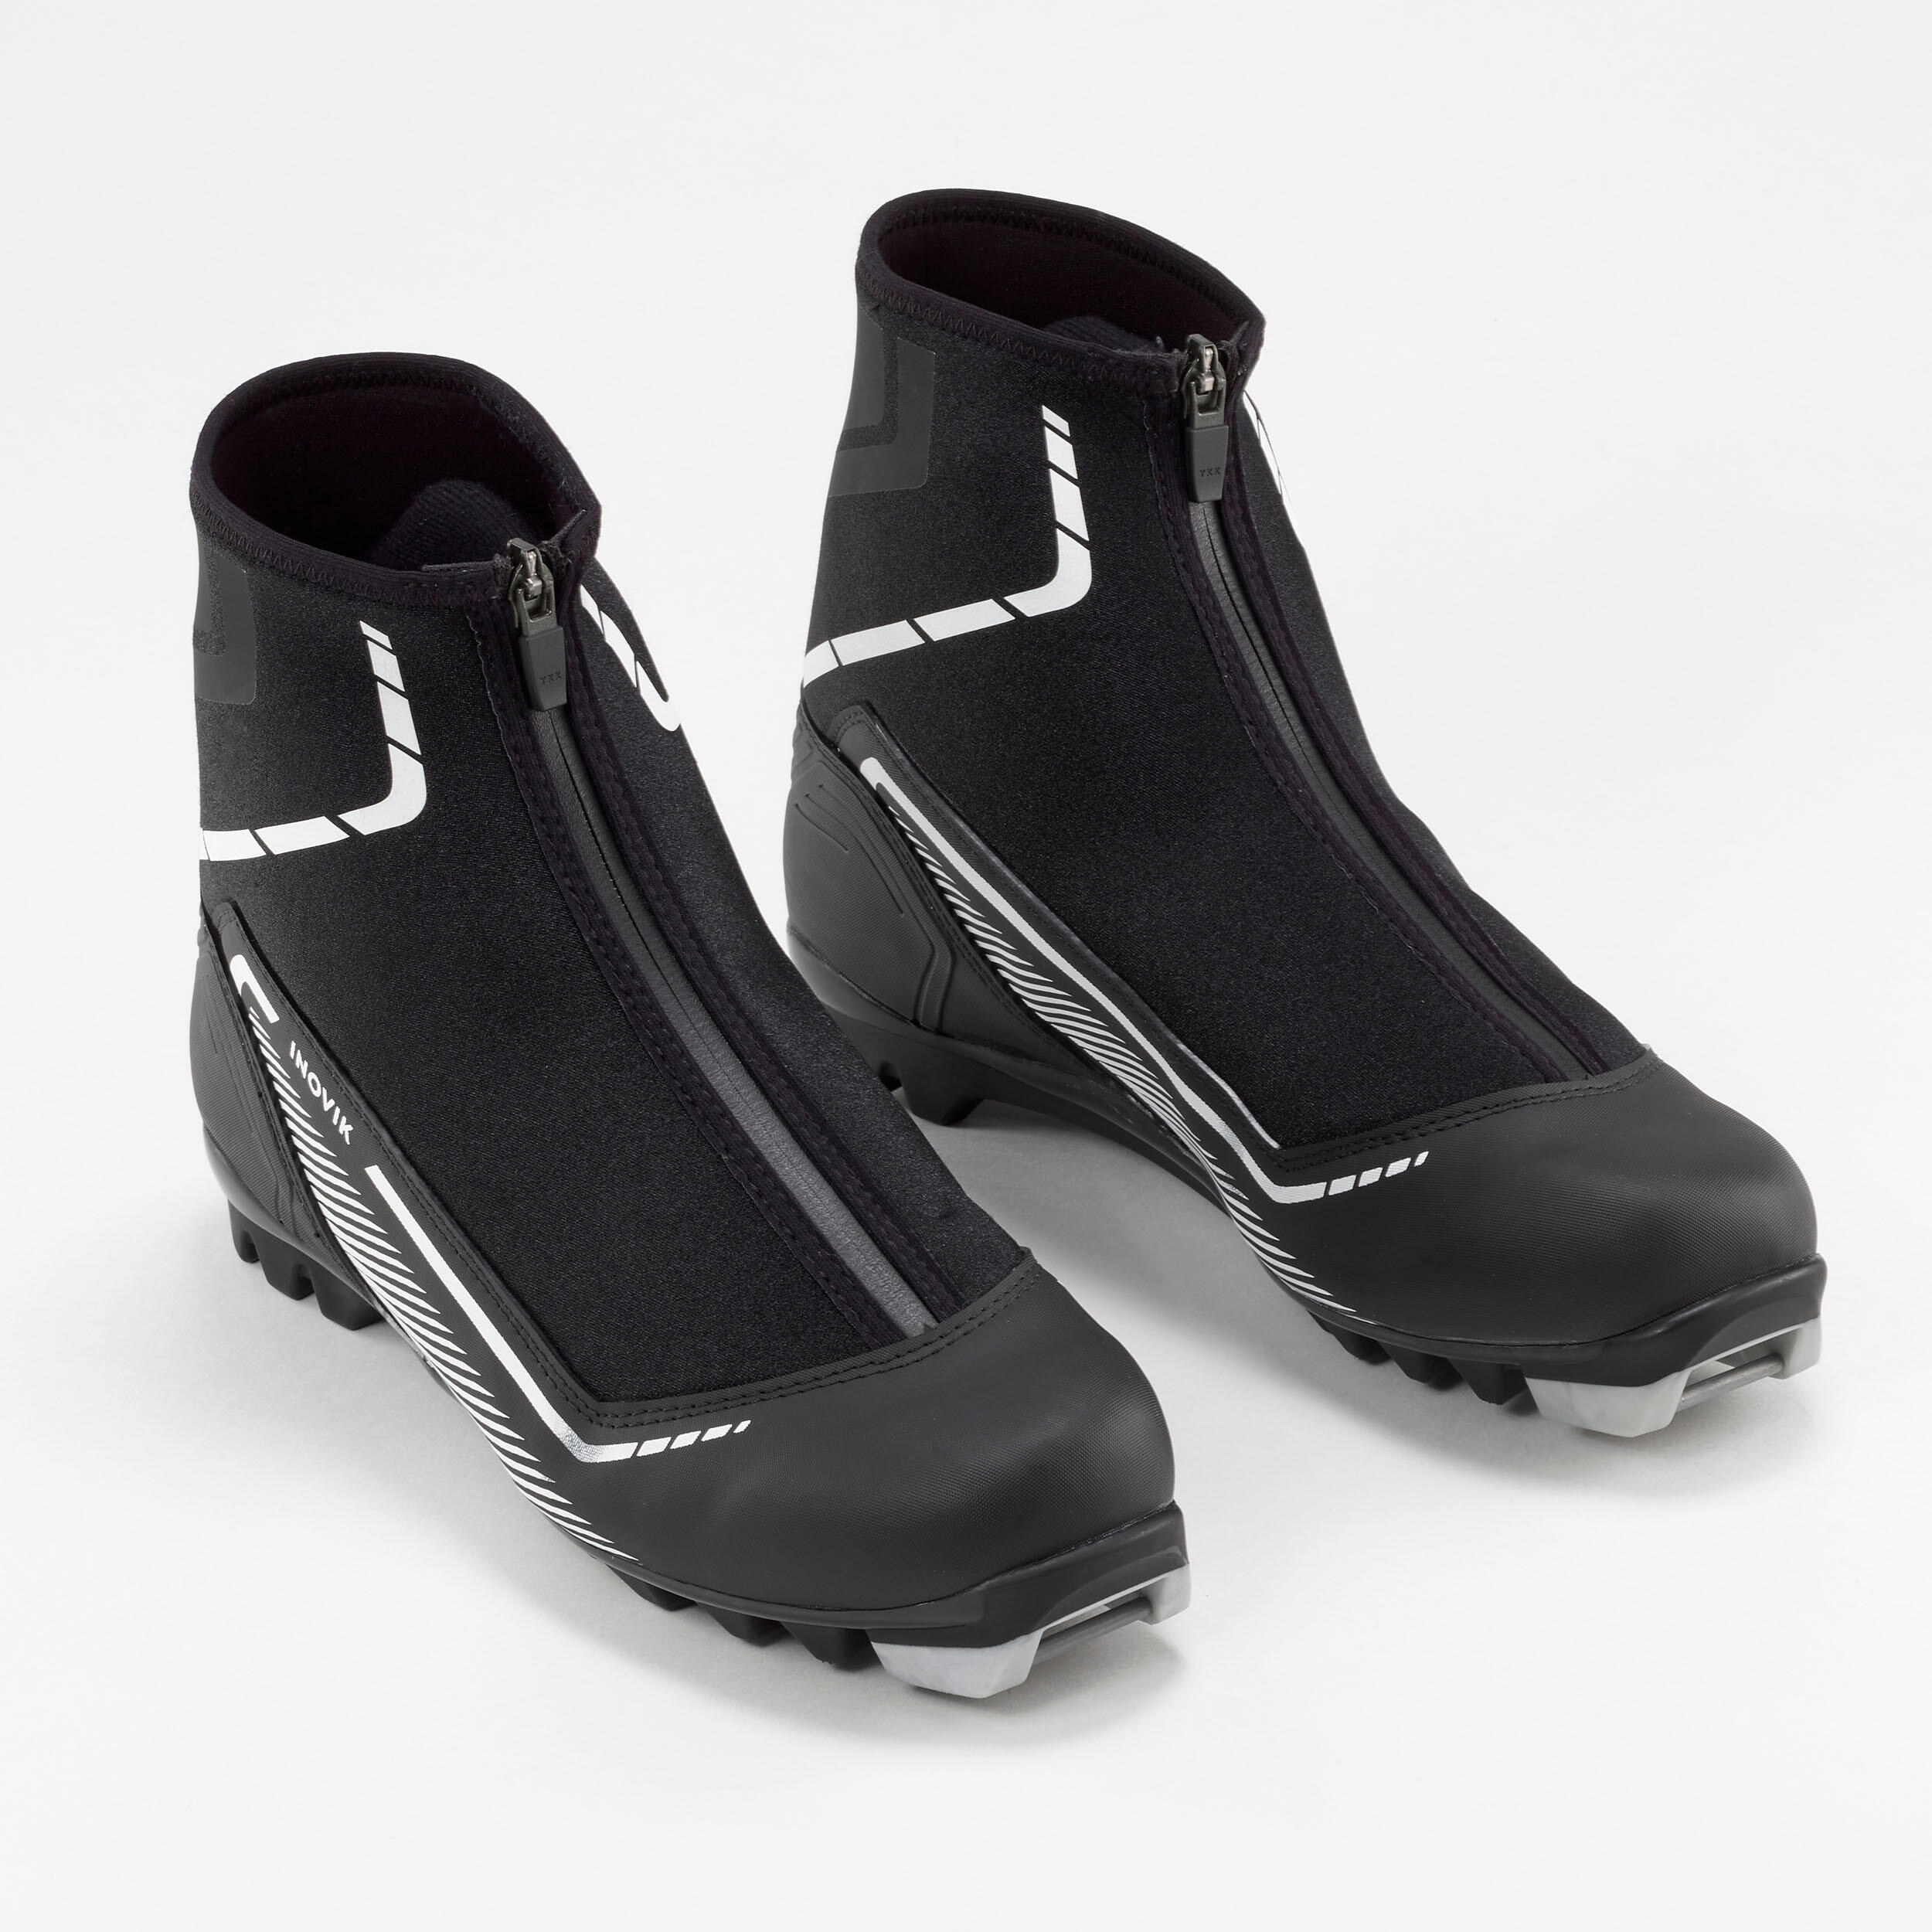 Cross-Country Skiing Boots - 150 - INOVIK